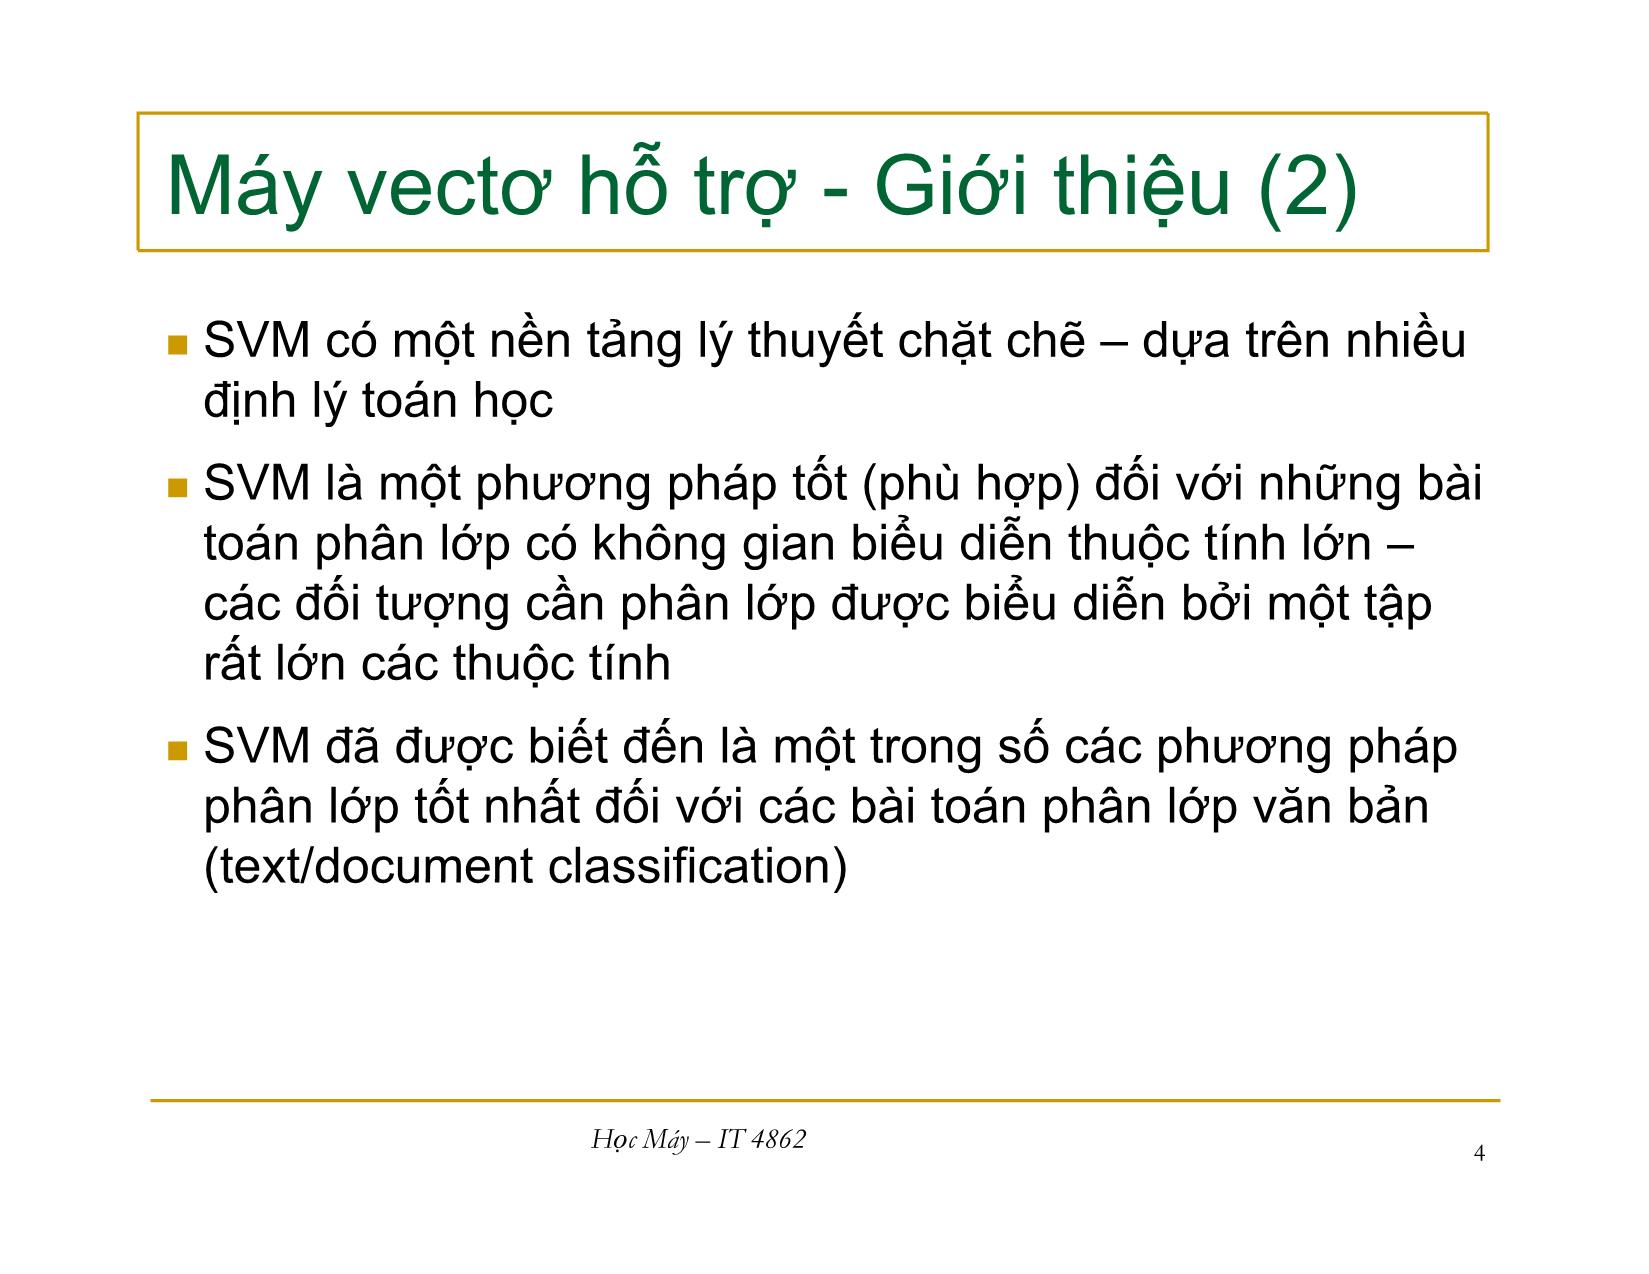 Bài giảng Học máy - Bài 9: Máy vecto hỗ trợ - Nguyễn Nhật Quang trang 4